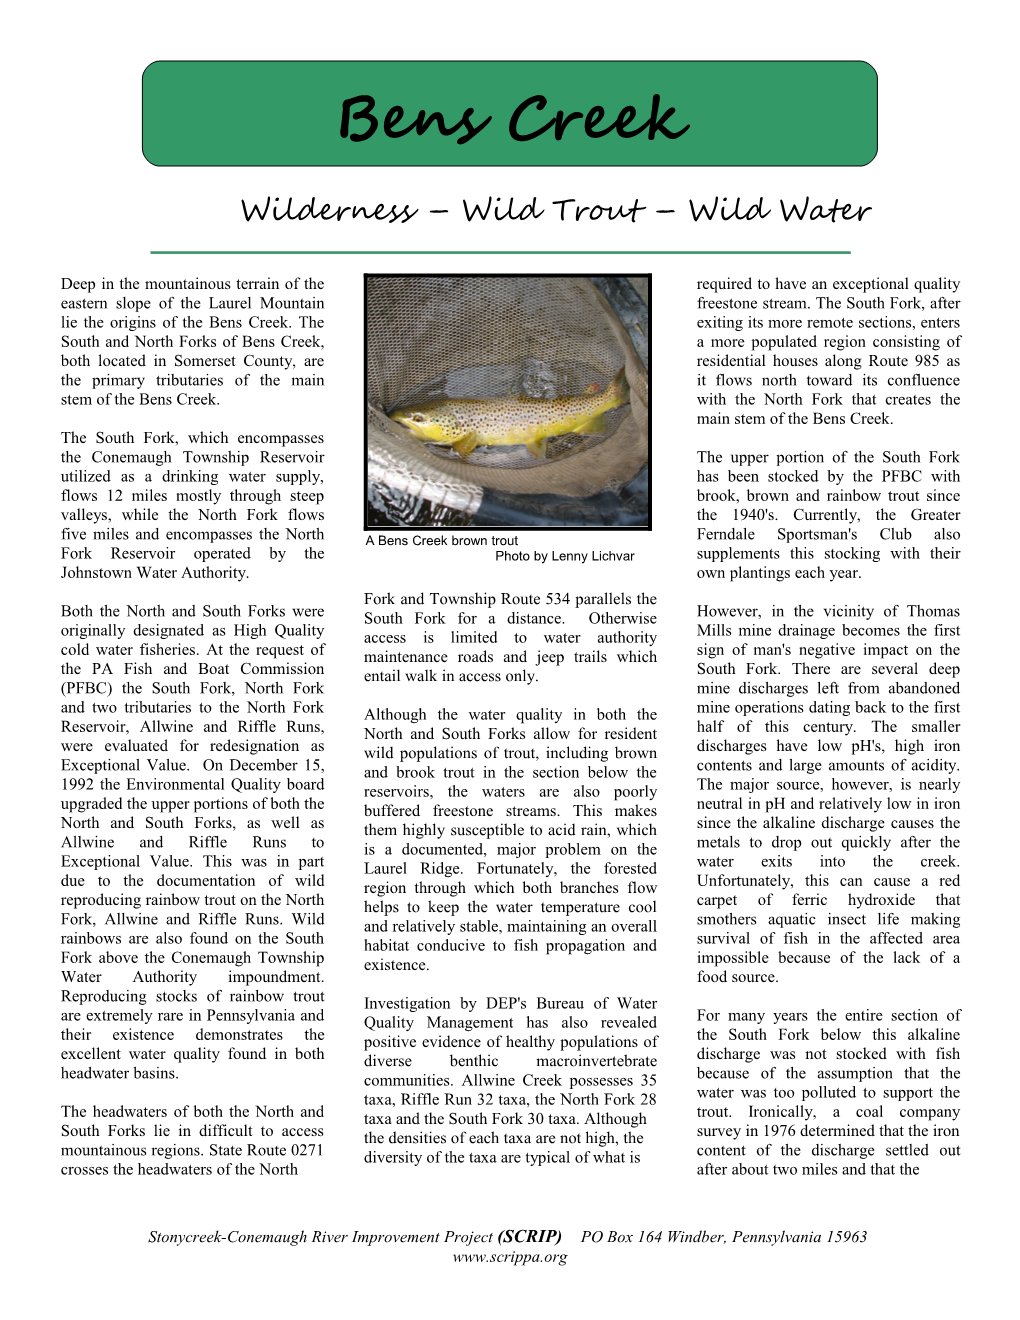 Wilderness Wild Trout Wild Water